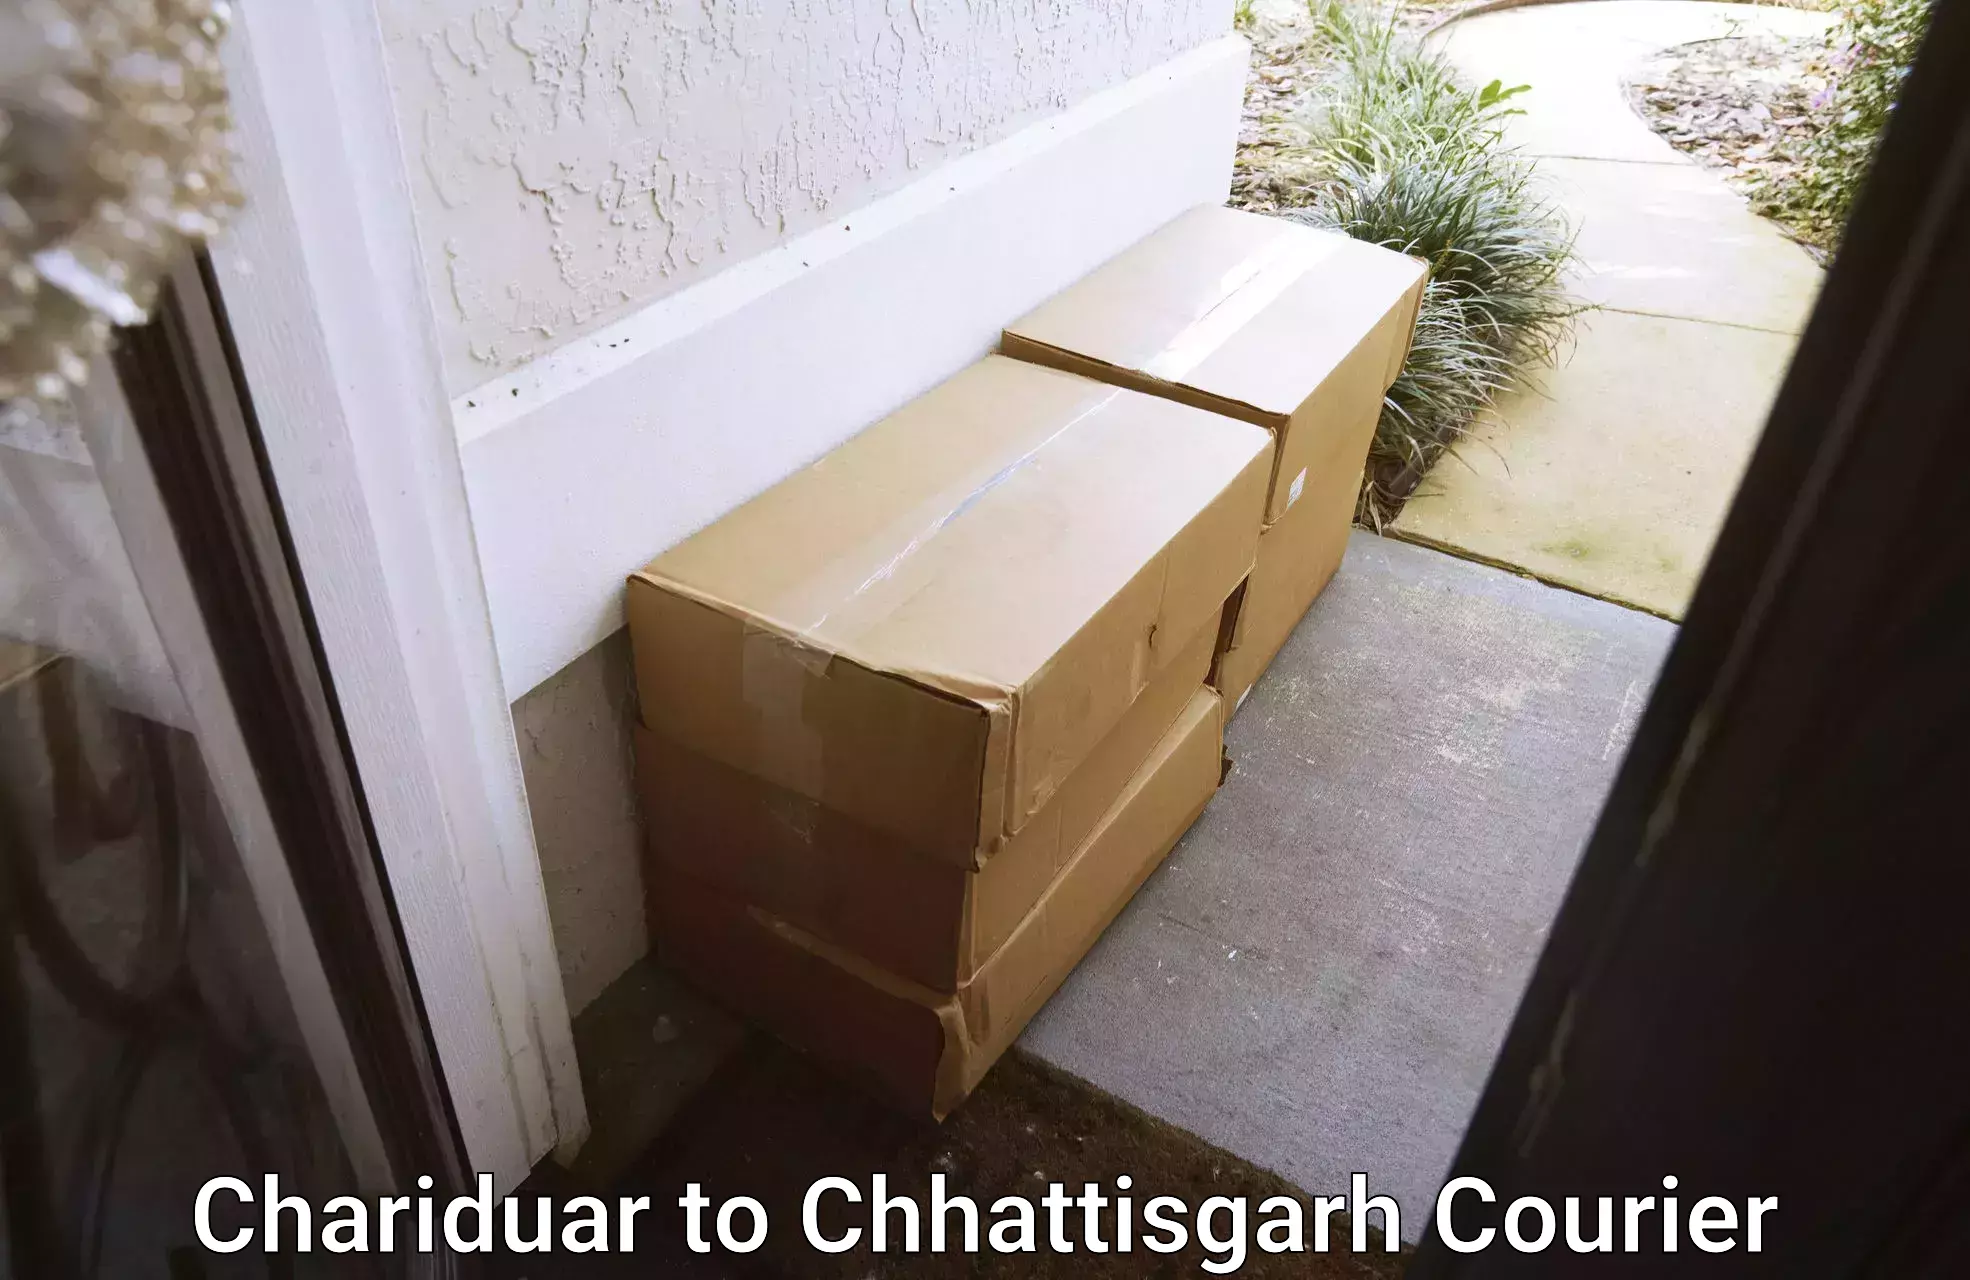 Flexible parcel services Chariduar to Durg